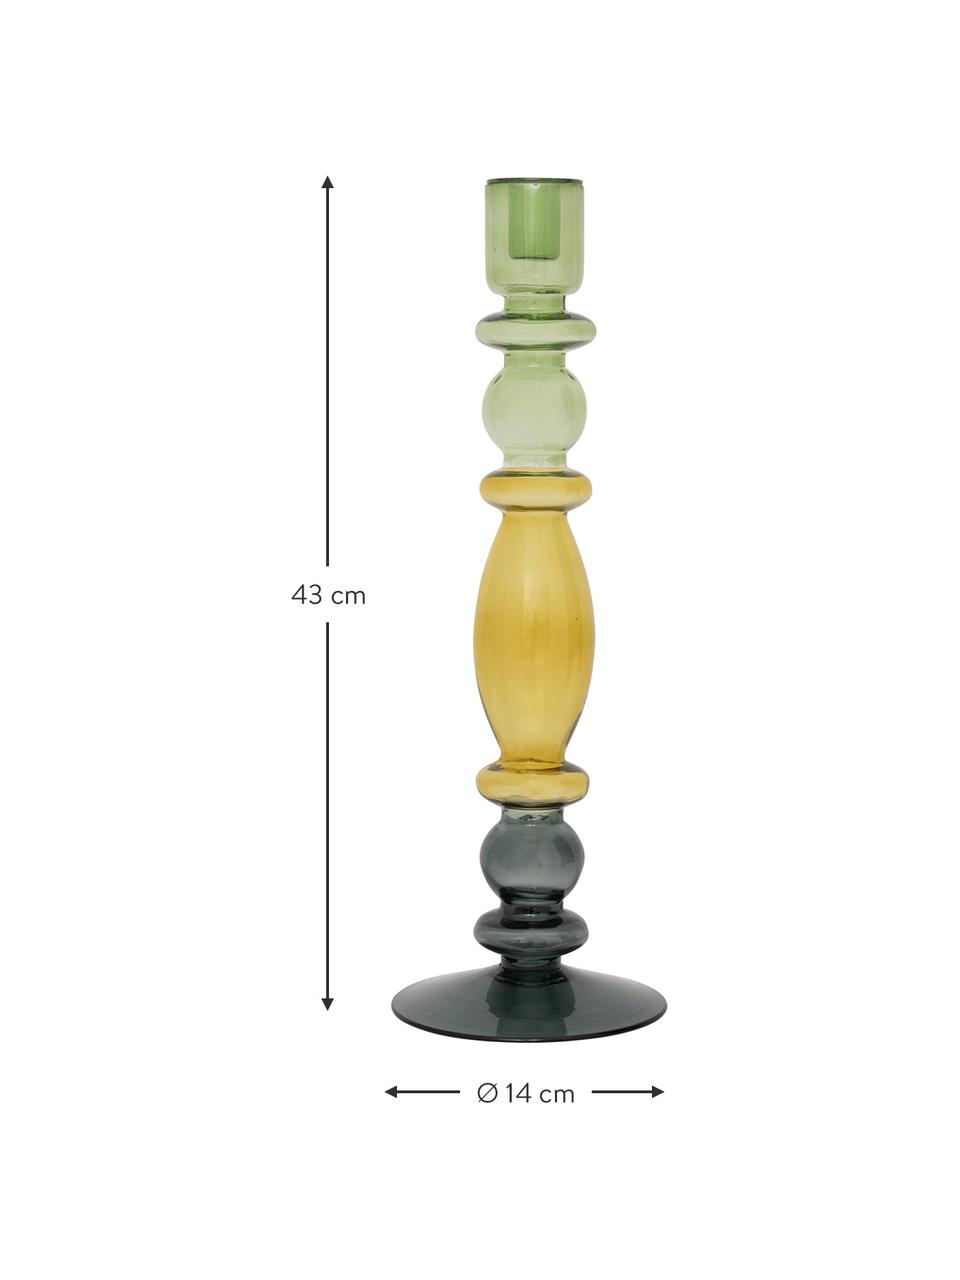 Skleněný svícen Bulb, Recyklované sklo, Zelená, žlutá, černá, transparentní, Ø 14 cm, V 43 cm